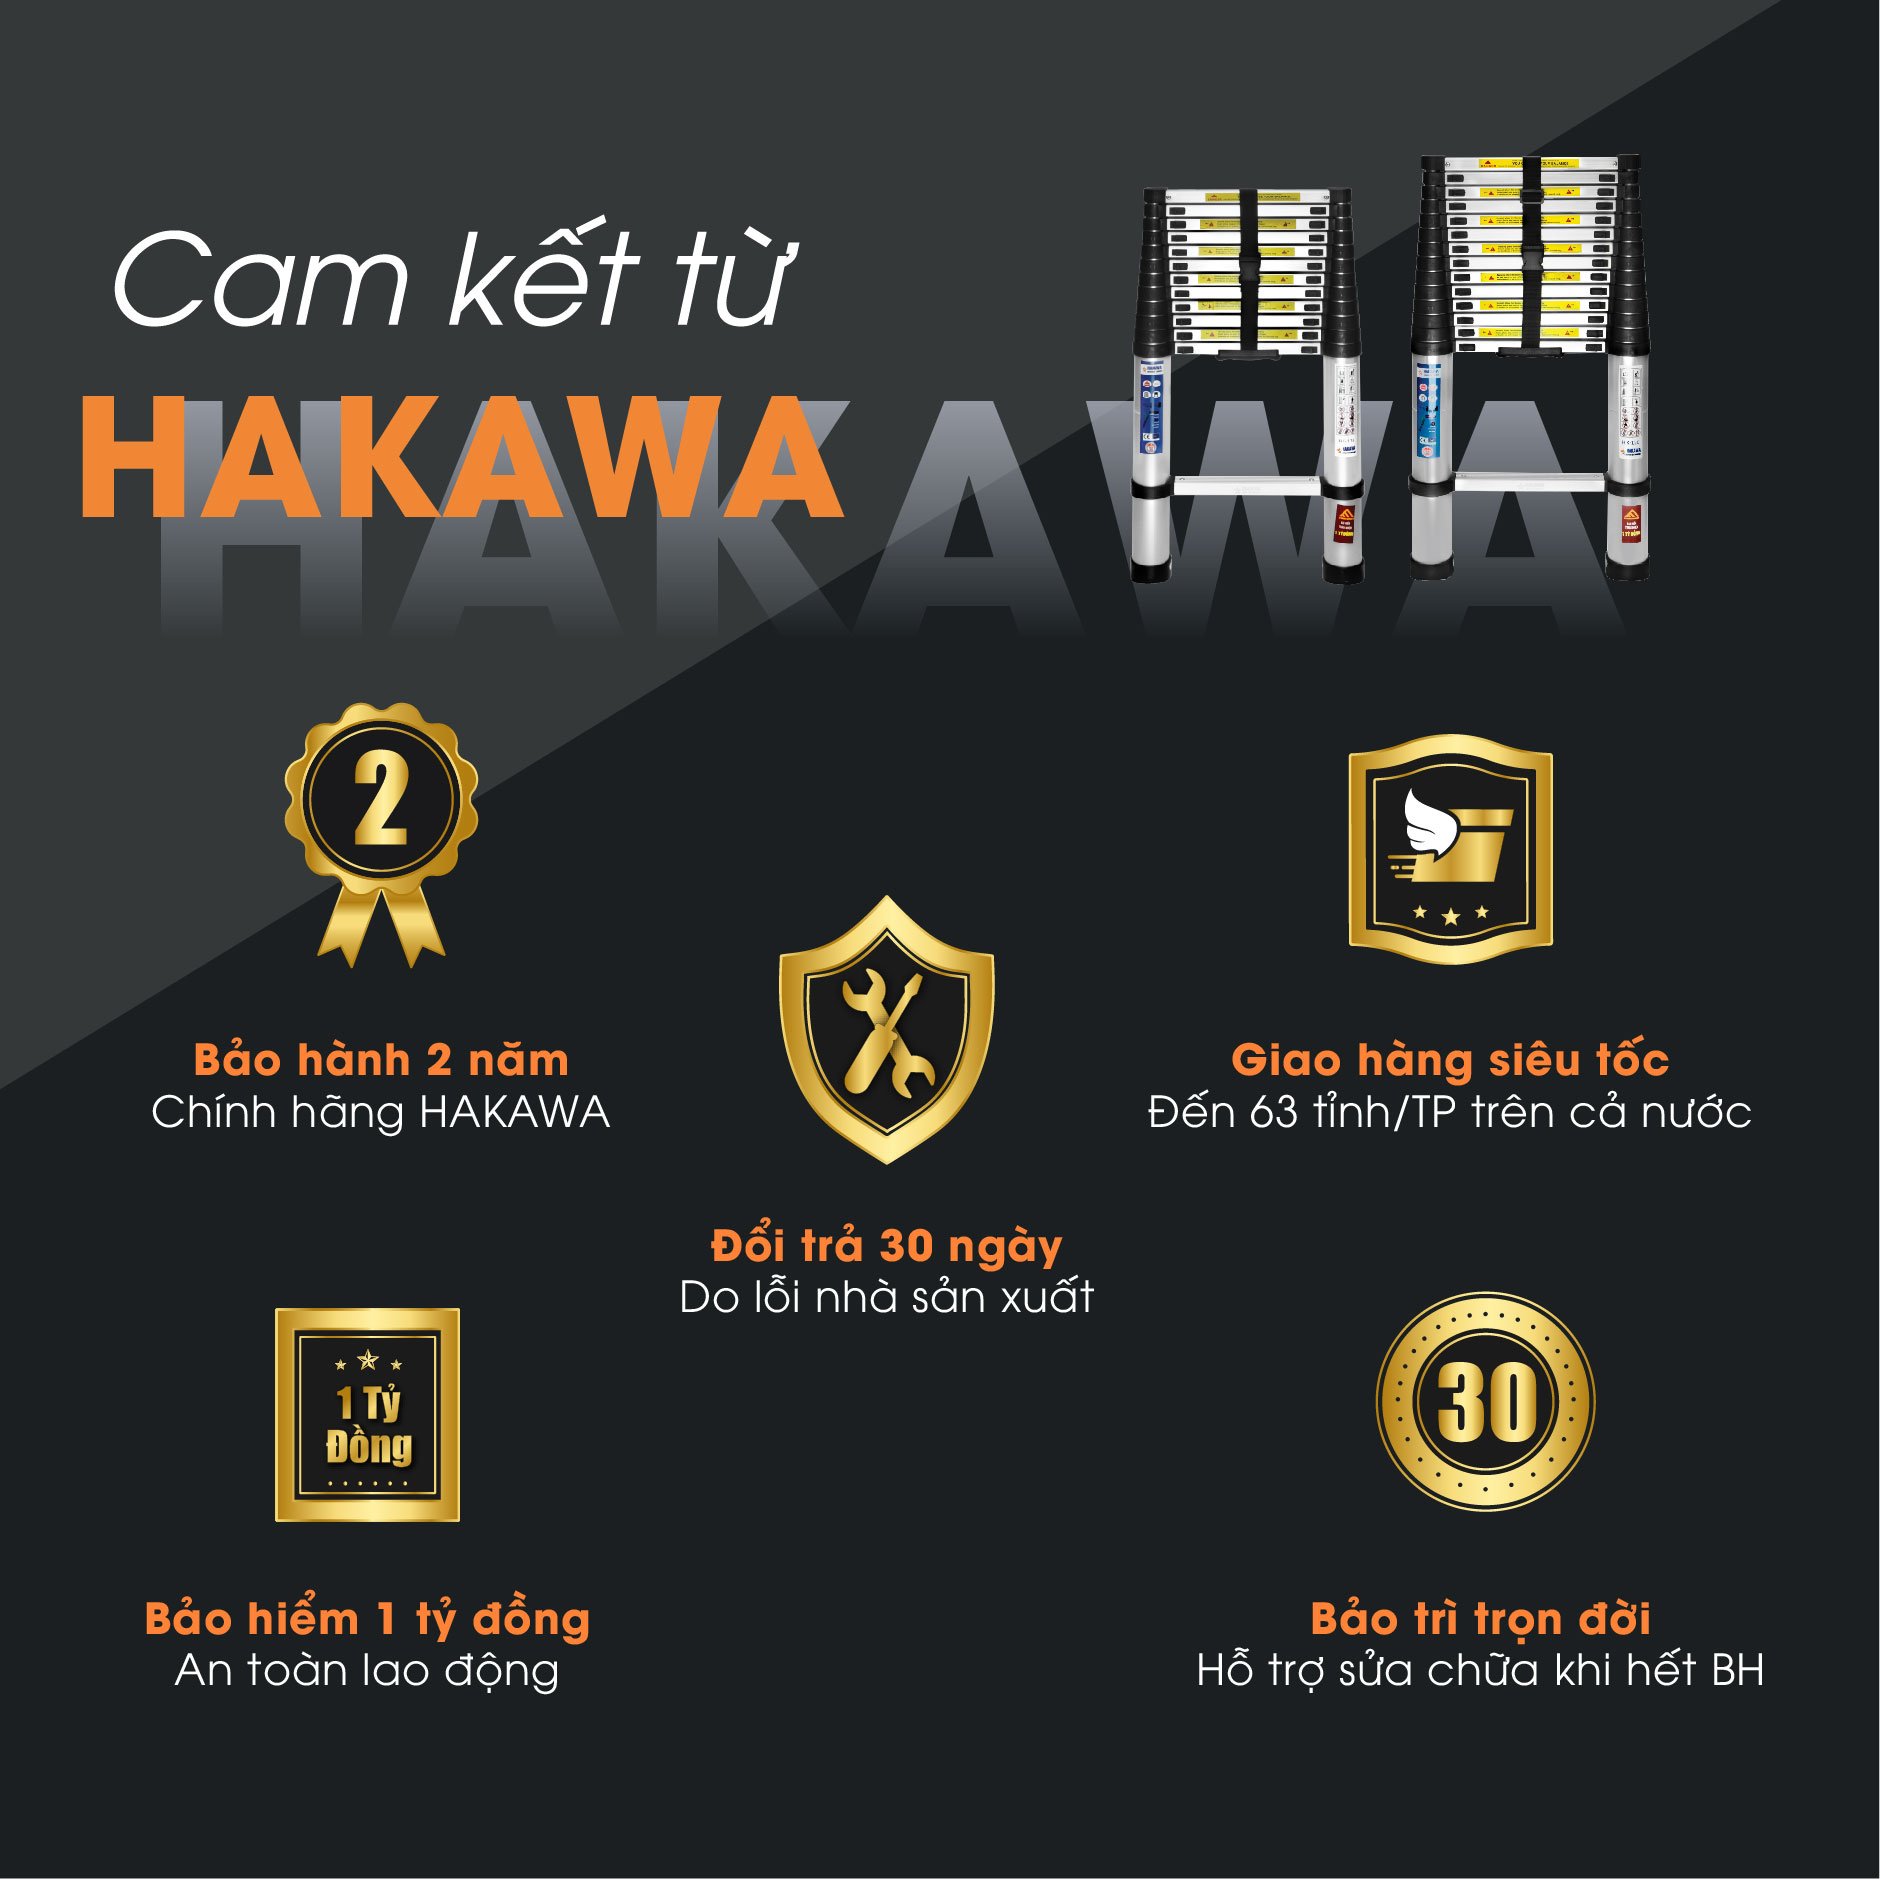 Chính sách bán hàng của Hakawa cam kết bảo vệ tối đa quyền lợi khách hàng